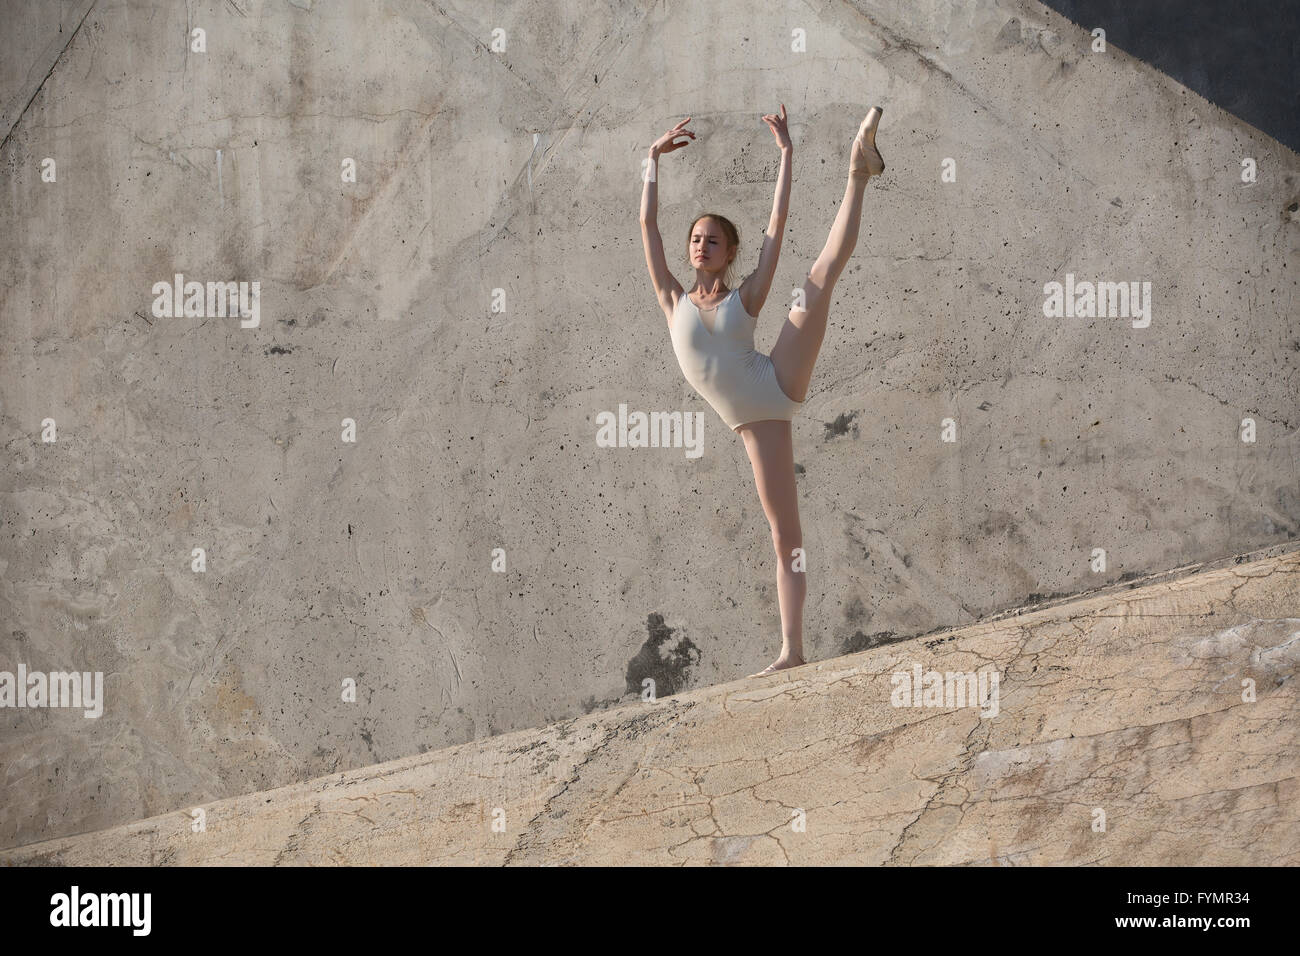 Danseuse Slim se trouve dans un ballet poser Banque D'Images